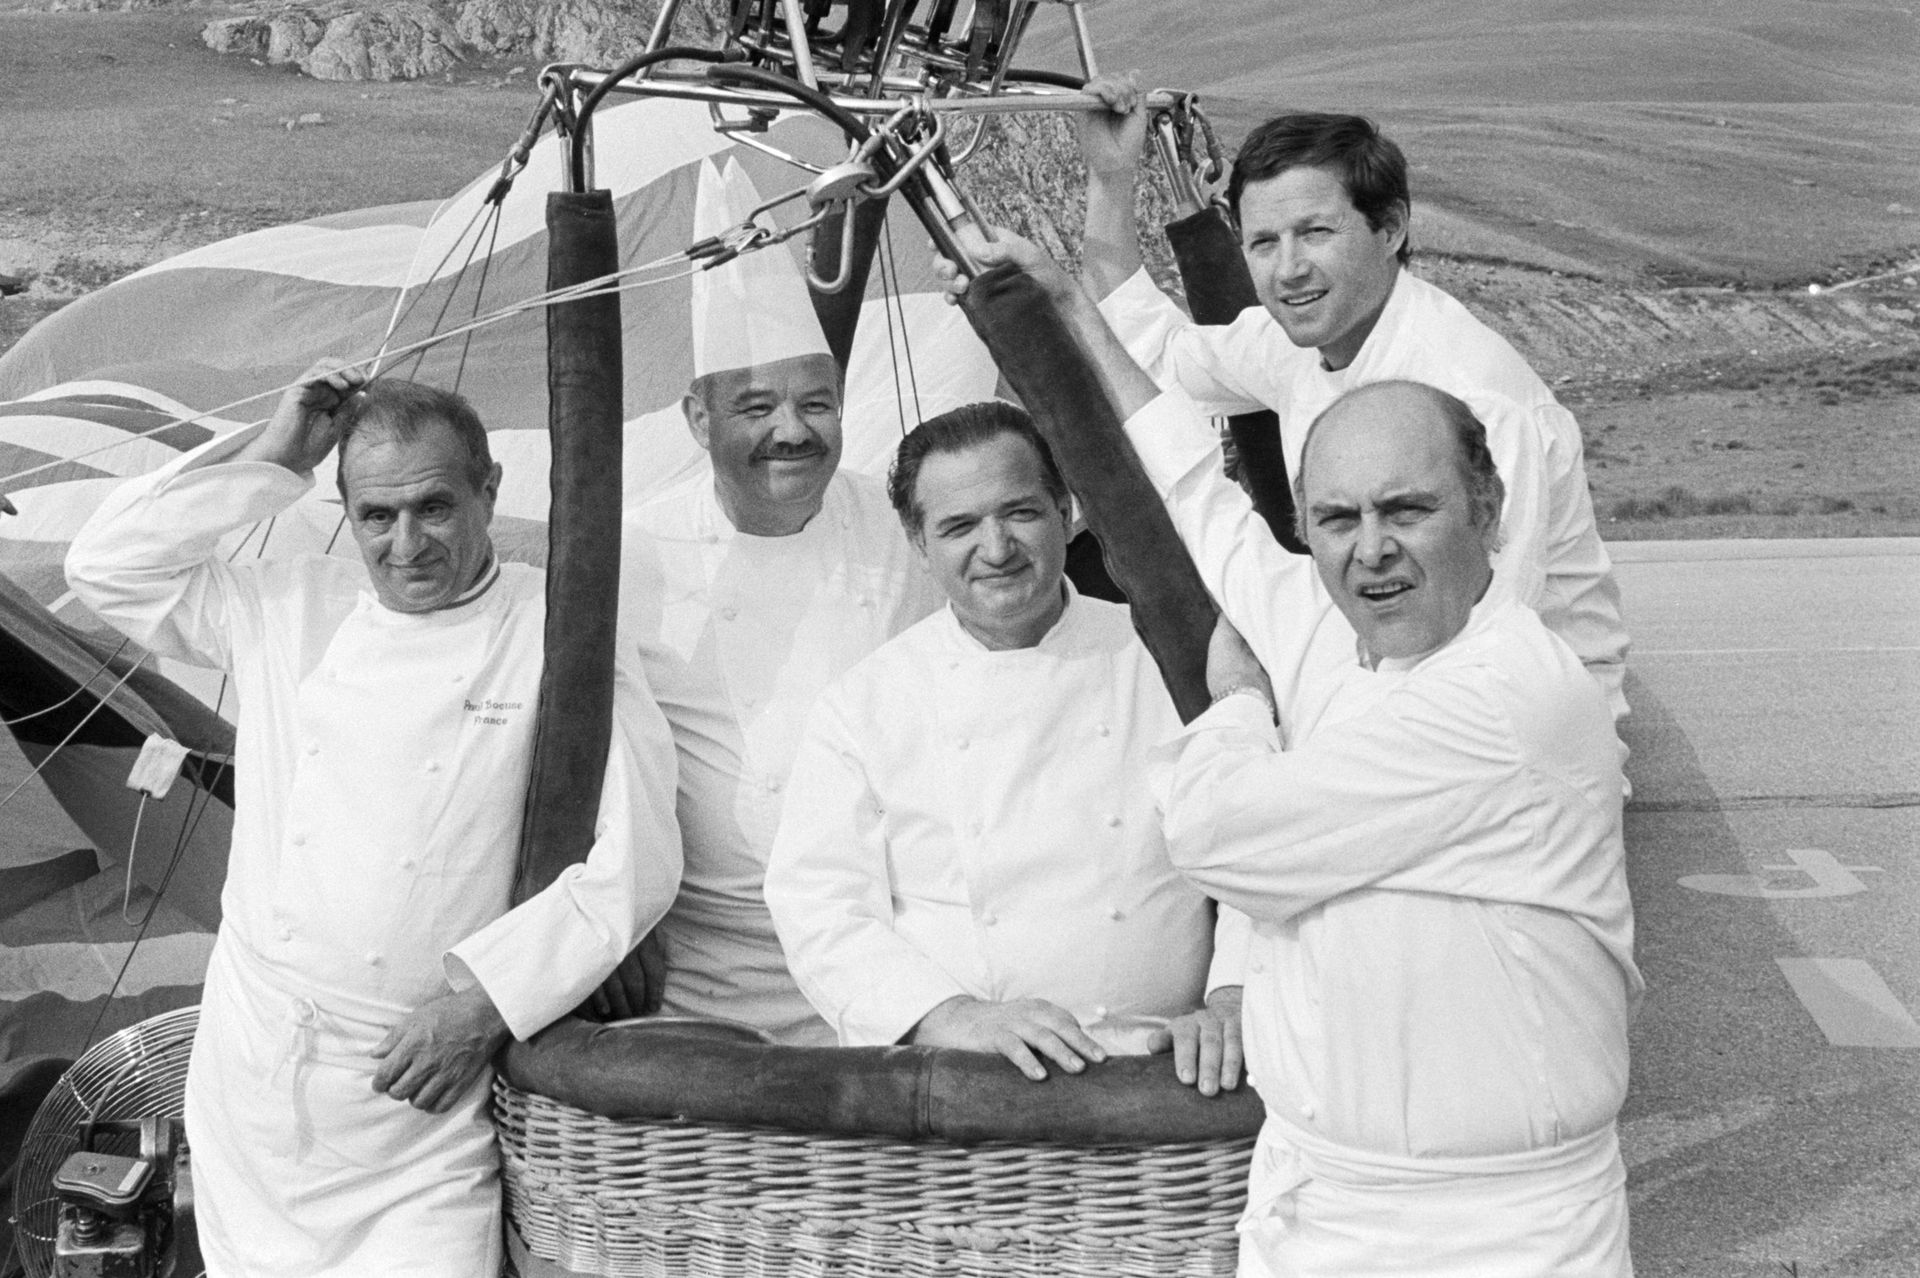 La fine équipe, vers les sommets, en juillet 1983. De gauche à droite : Paul Bocuse, Pierre Troisros, Jacques Pic, Georges Blanc et Alain Chape